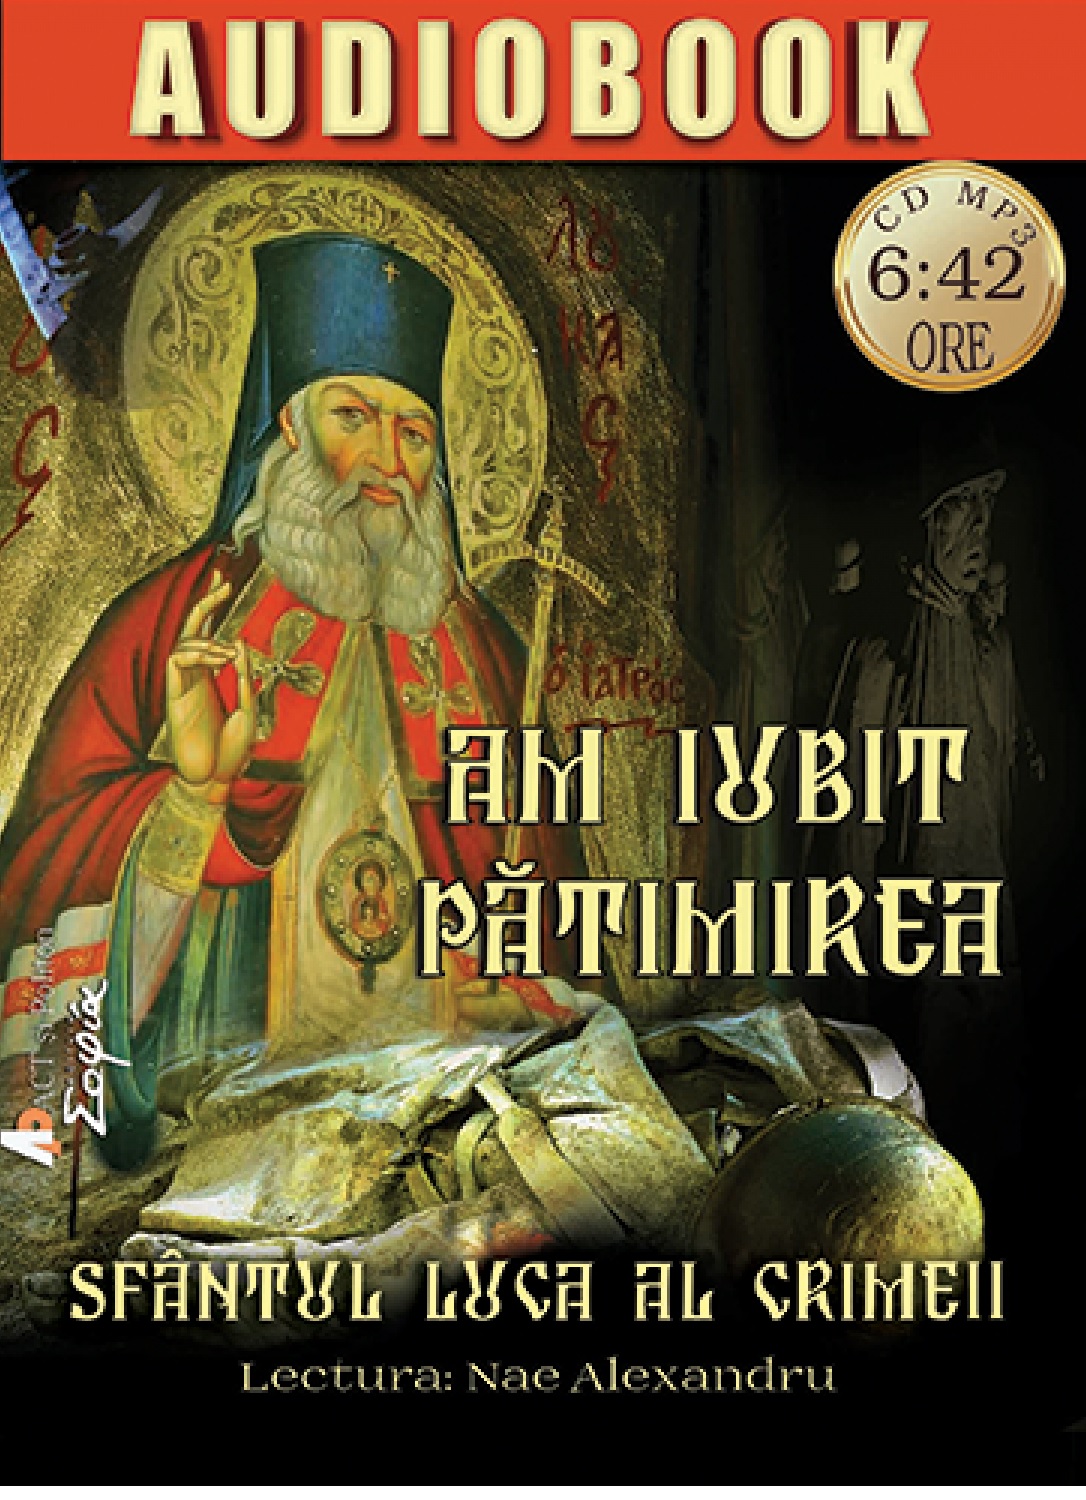 Am iubit patimirea | Sfantul Luca al Crimeii